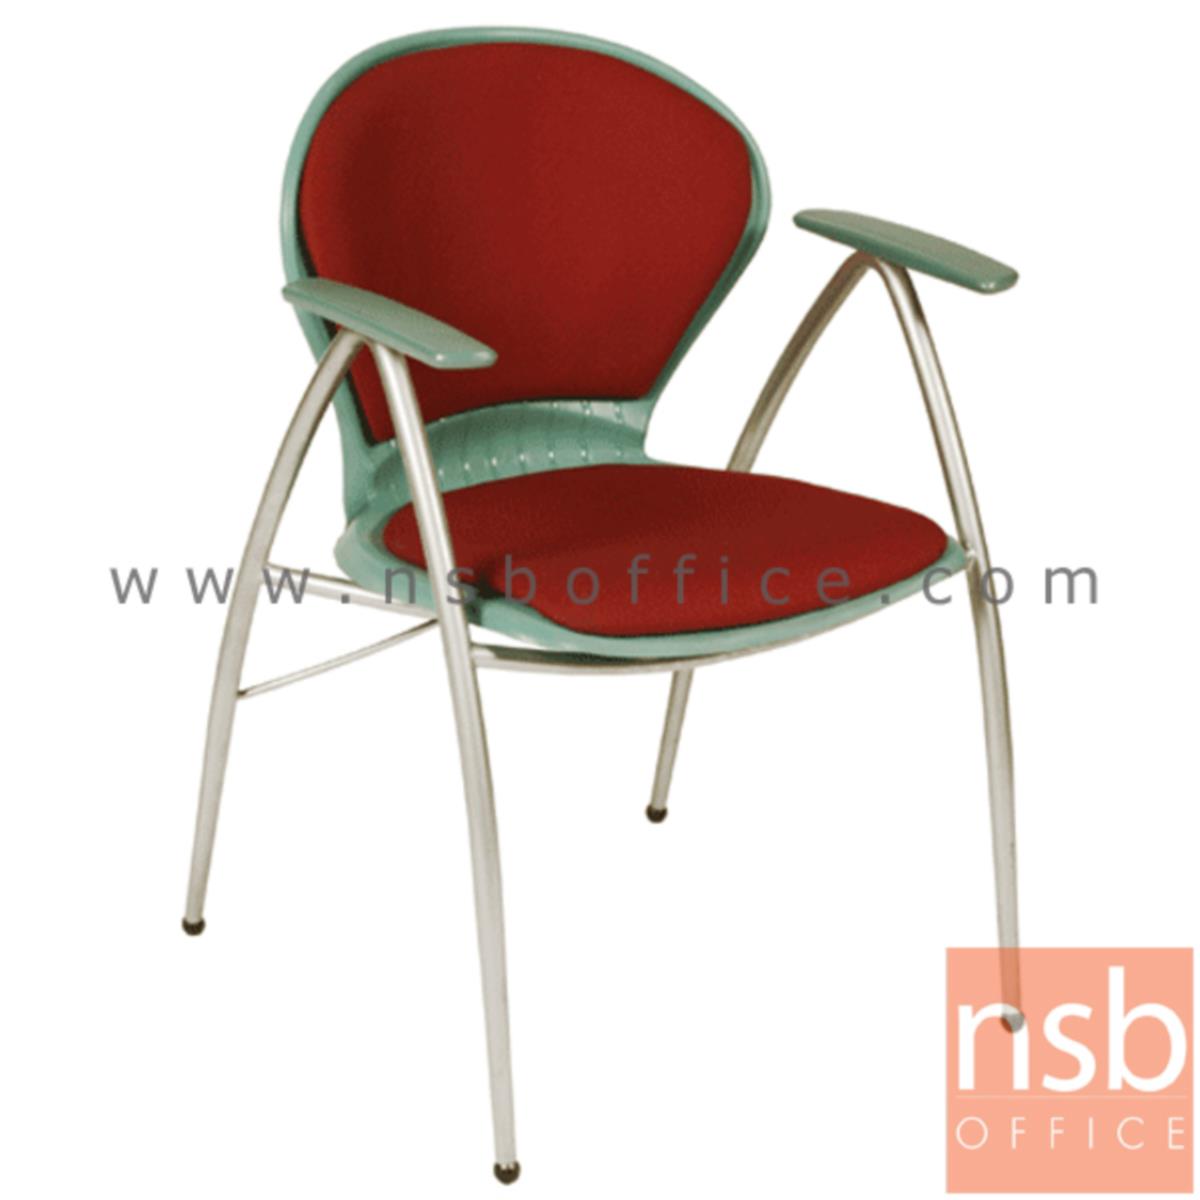 เก้าอี้อเนกประสงค์เฟรมโพลี่ รุ่น A766-166  ขาเหล็กพ่นสีเทา